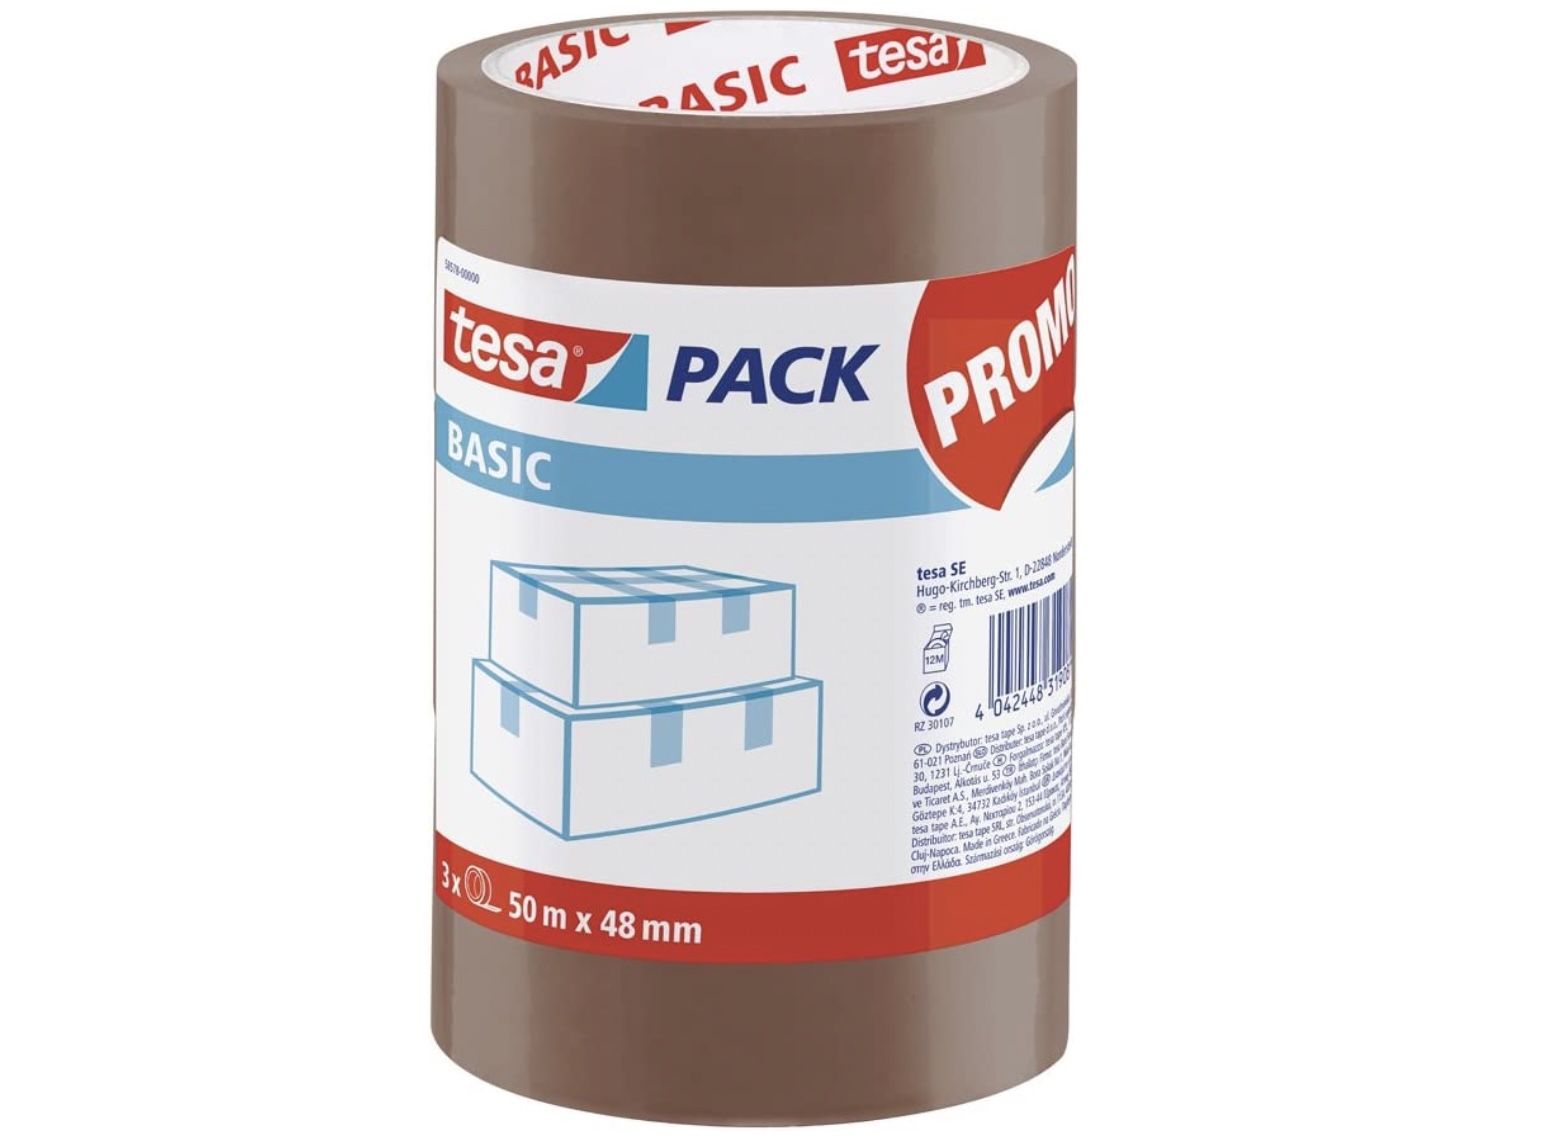 3 x tesa Basic Pack Verpackungsklebeband für 4,44€ (statt 7€)